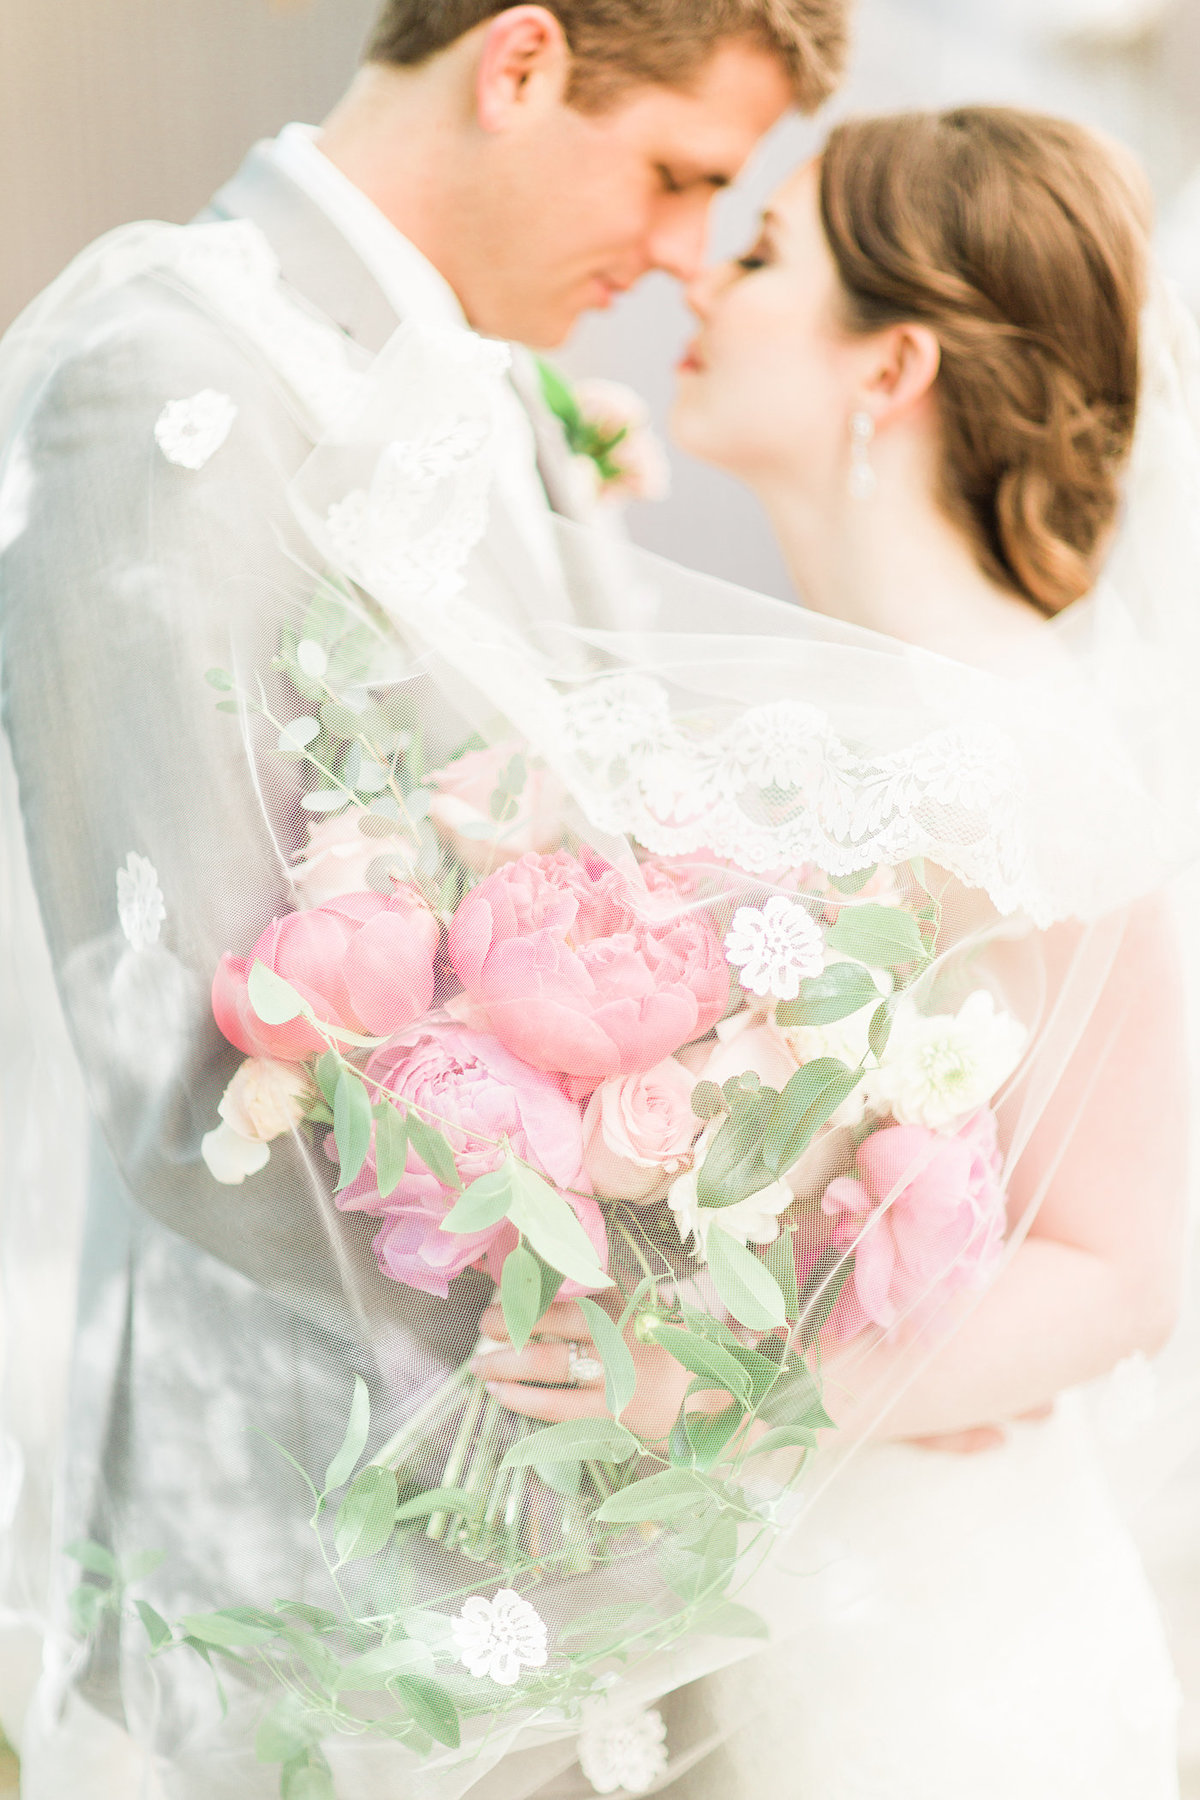 DFW Wedding Floral Design - A Stylish Soiree00007